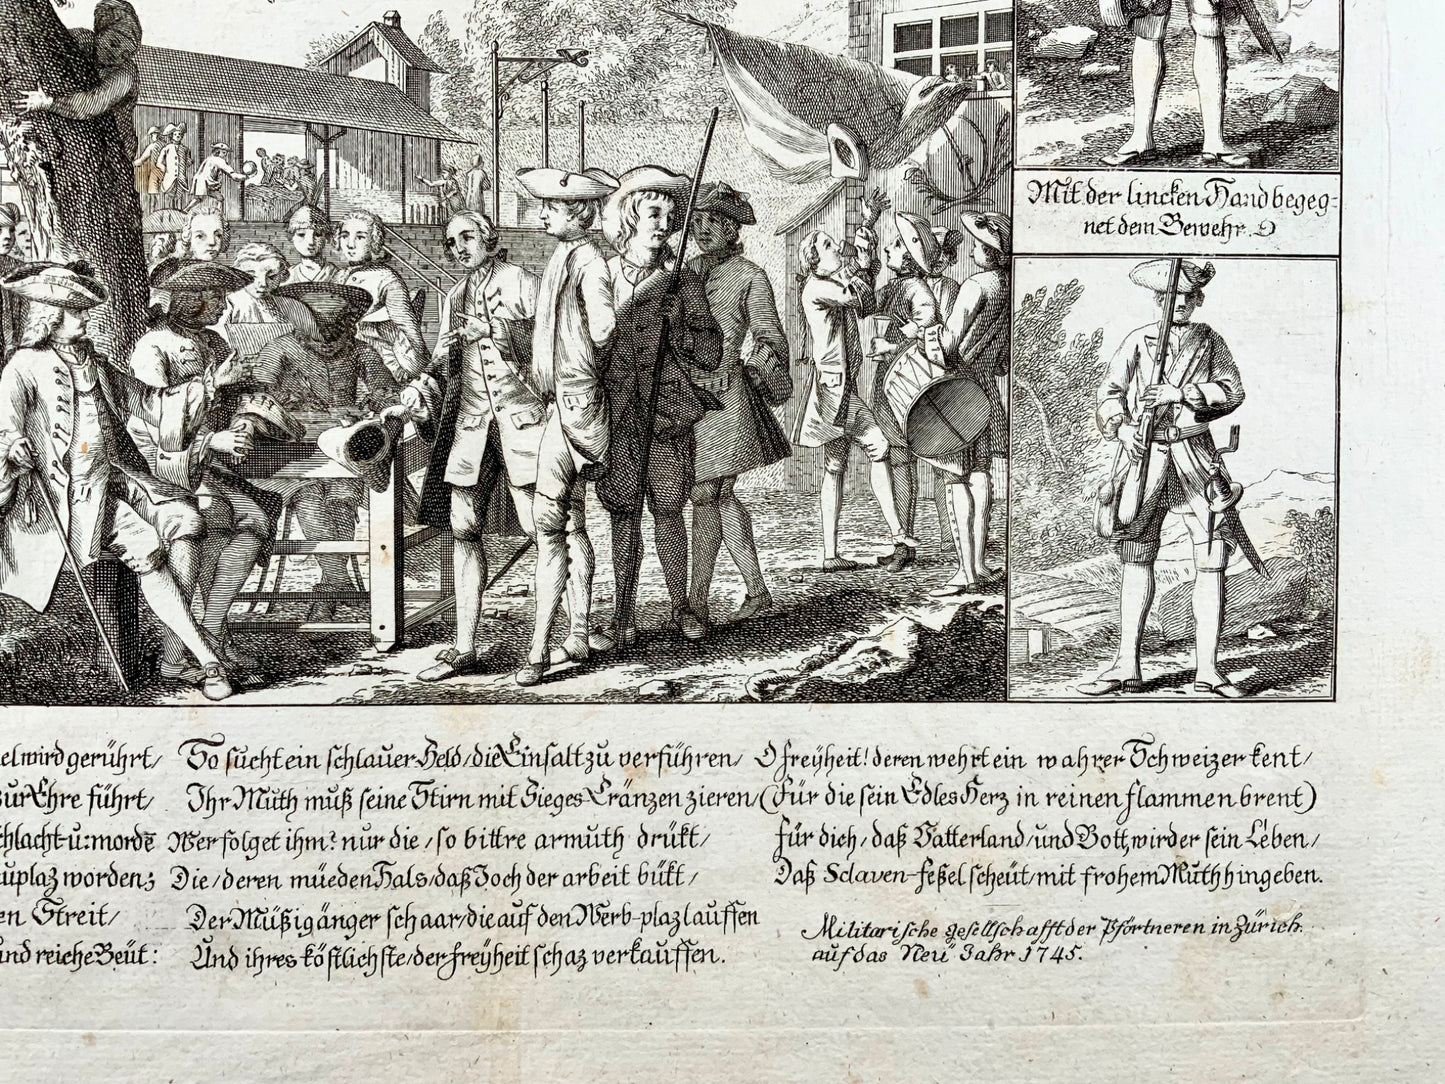 1745 Military Broadside, Quemque suae rapiunt, Recruiting Soldiers, Infantry